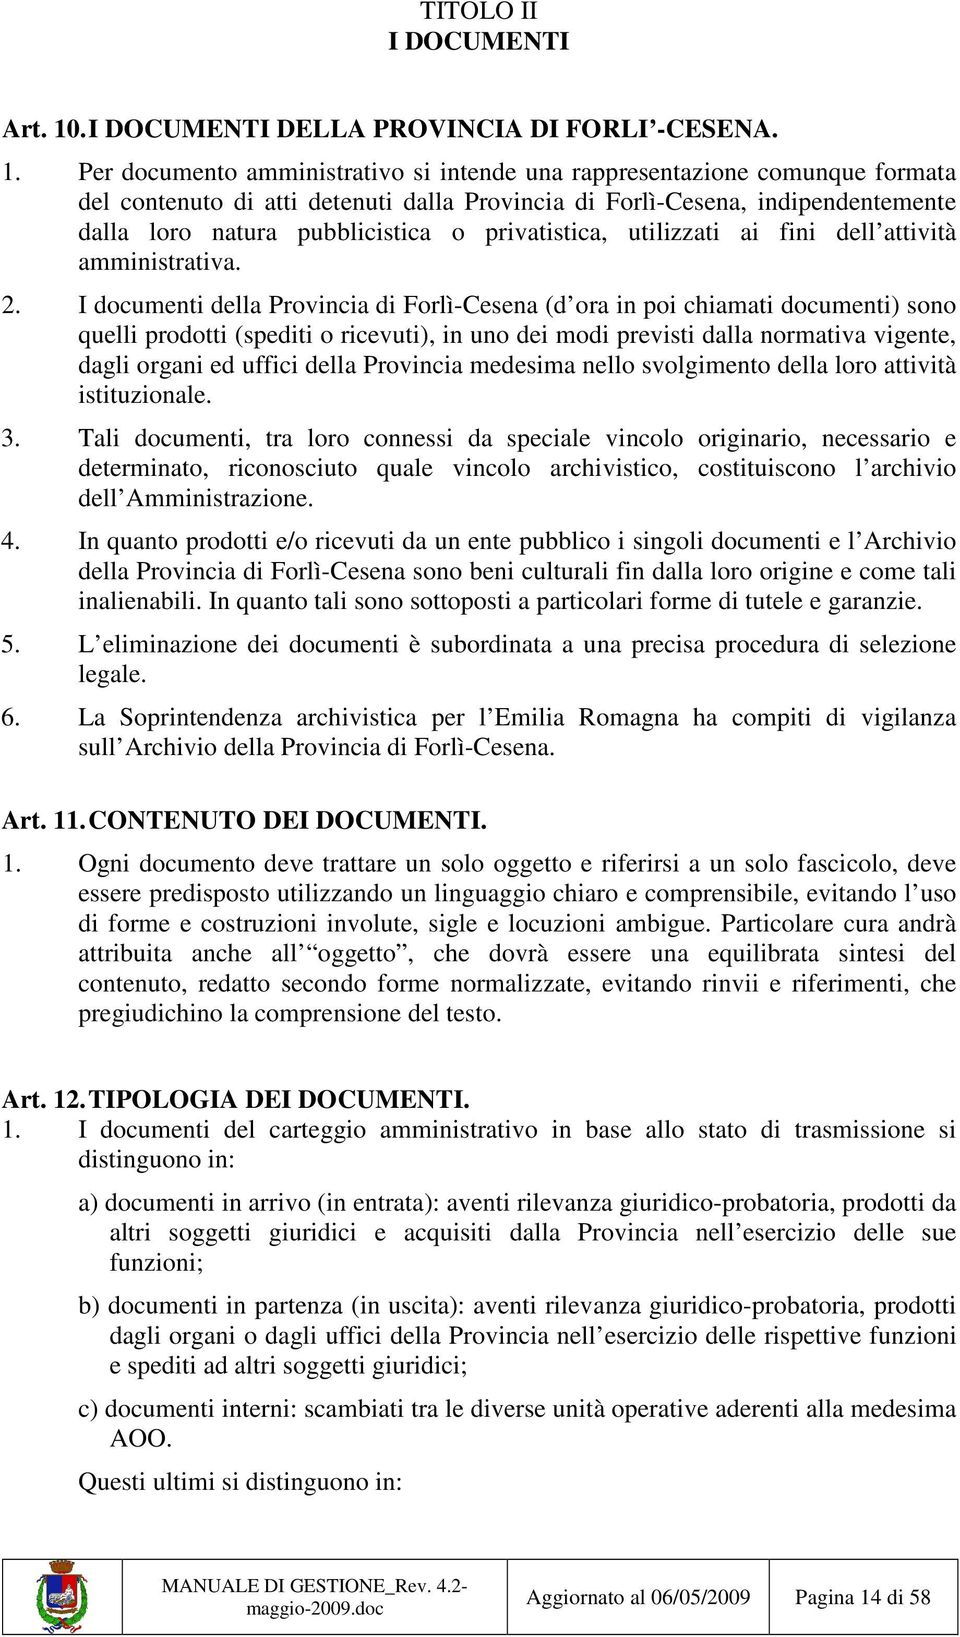 Per documento amministrativo si intende una rappresentazione comunque formata del contenuto di atti detenuti dalla Provincia di Forlì-Cesena, indipendentemente dalla loro natura pubblicistica o